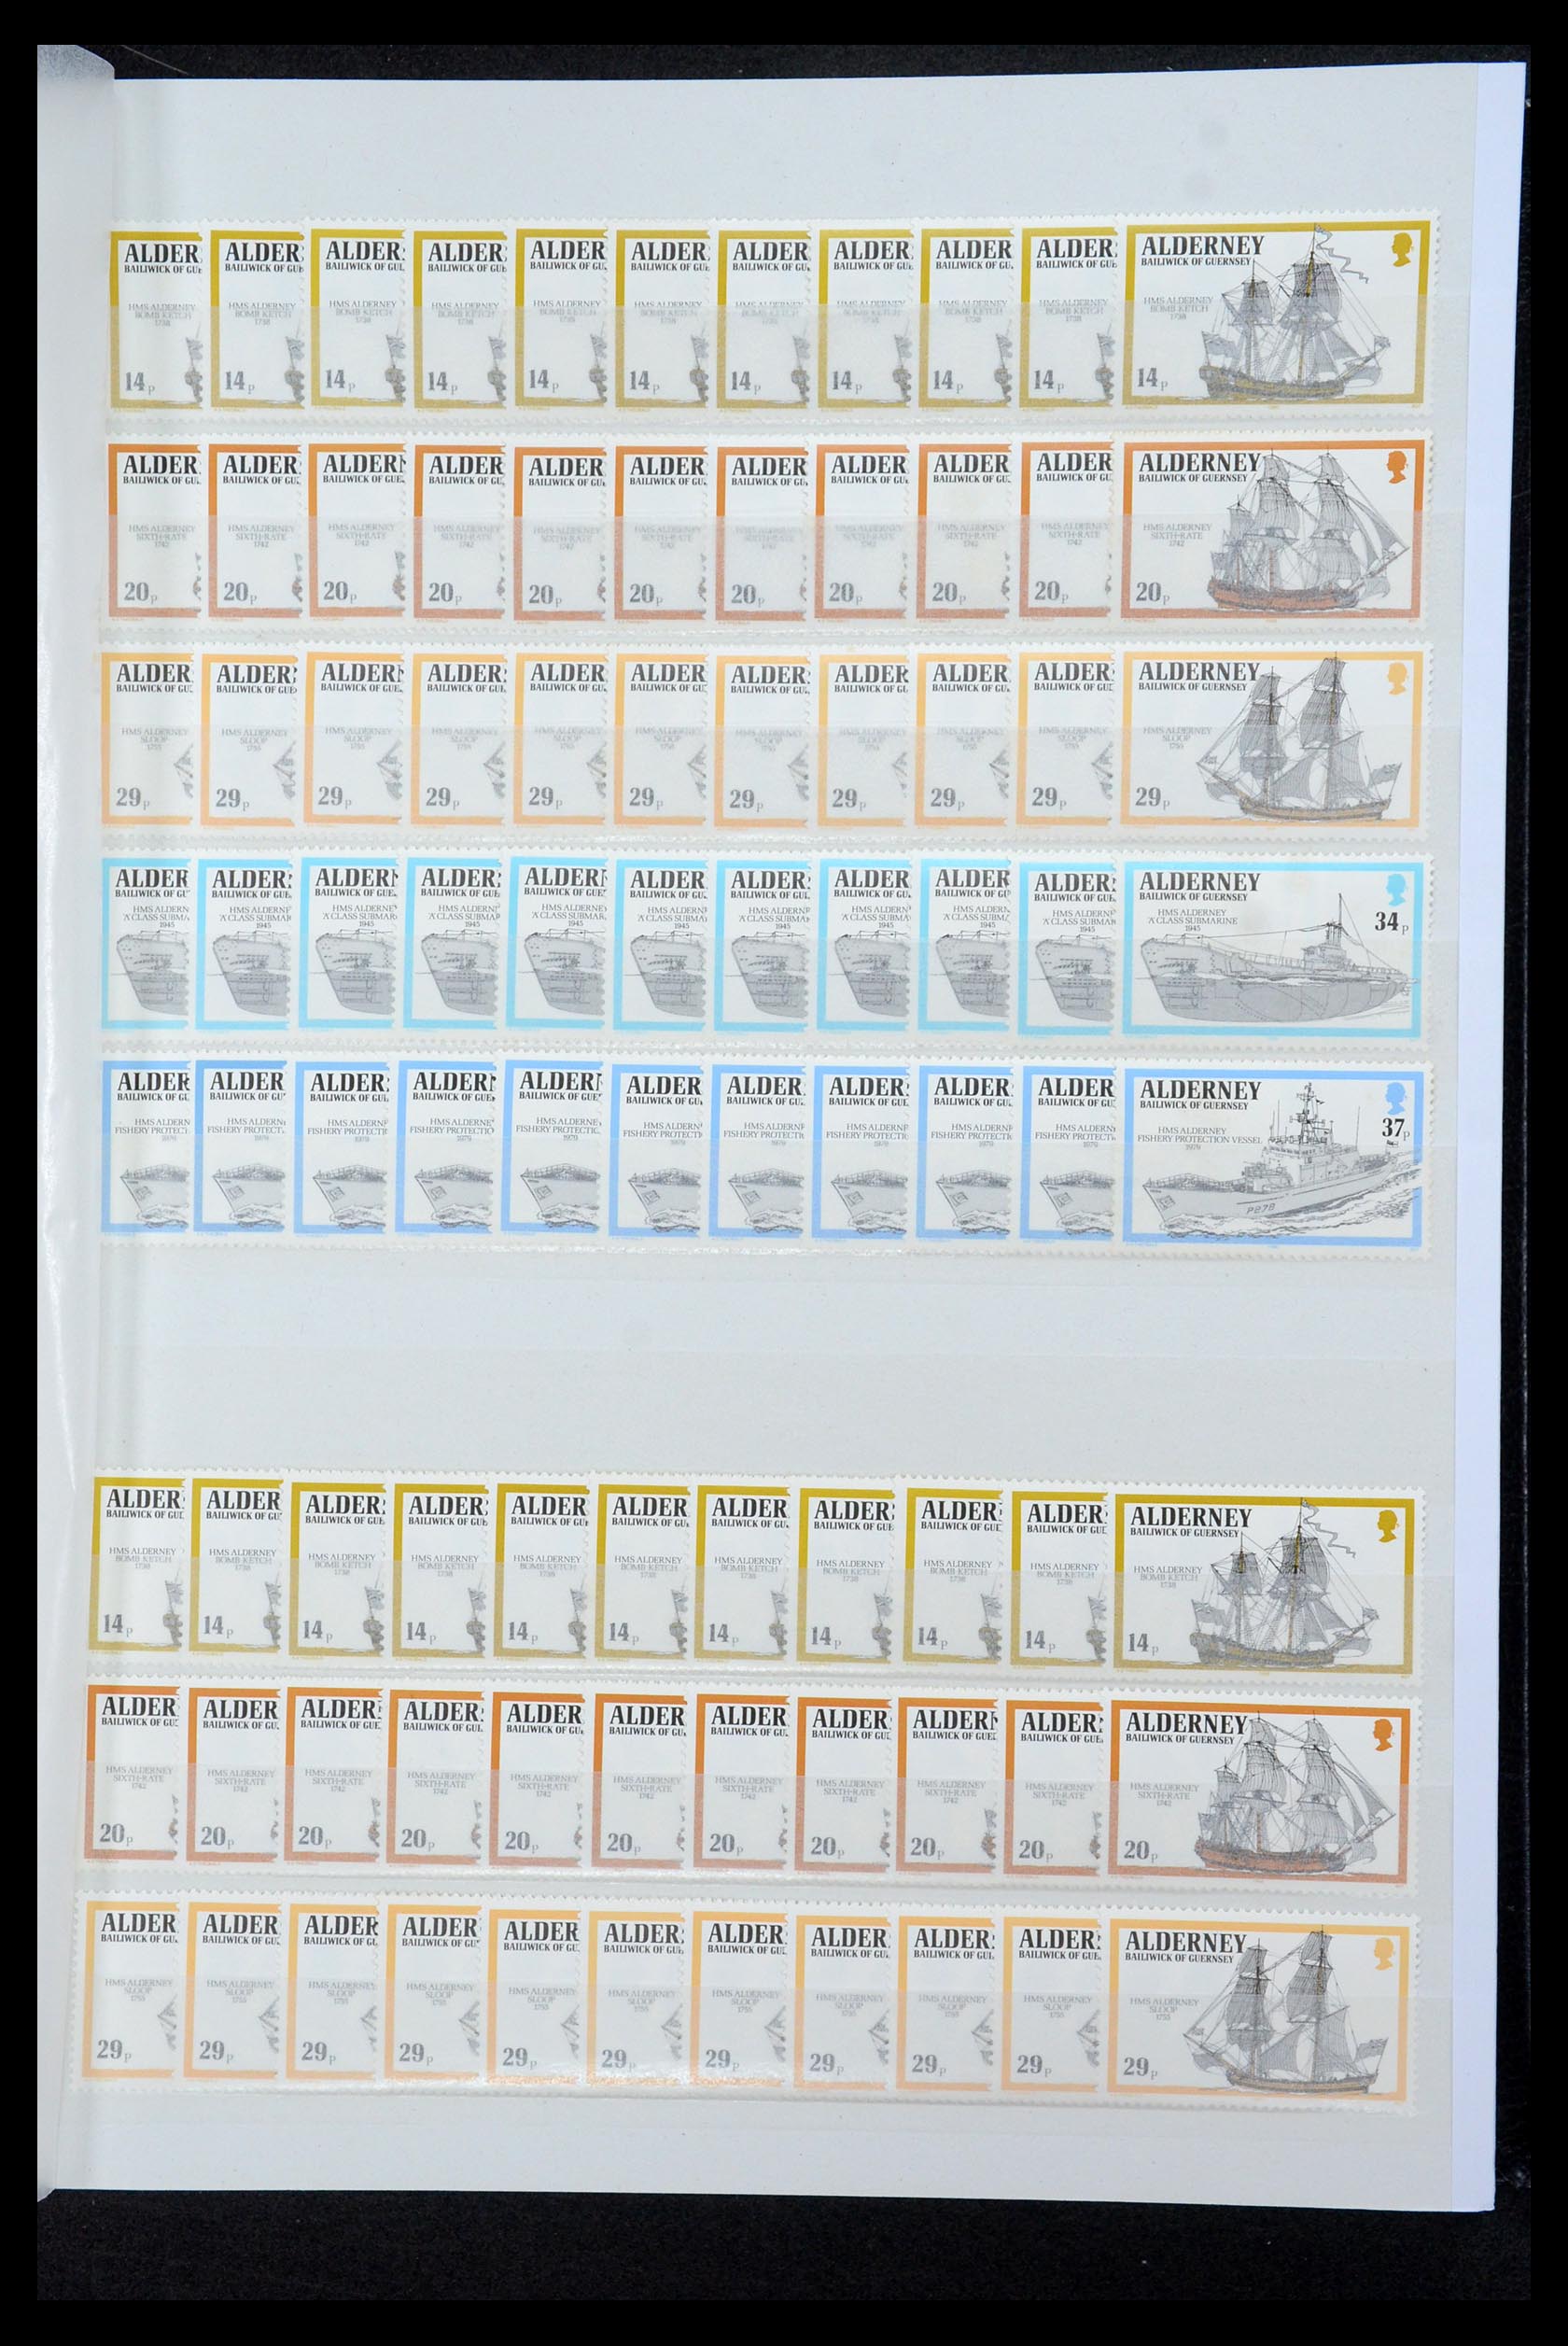 35529 033 - Stamp Collection 35529 Alderney1983-2014!